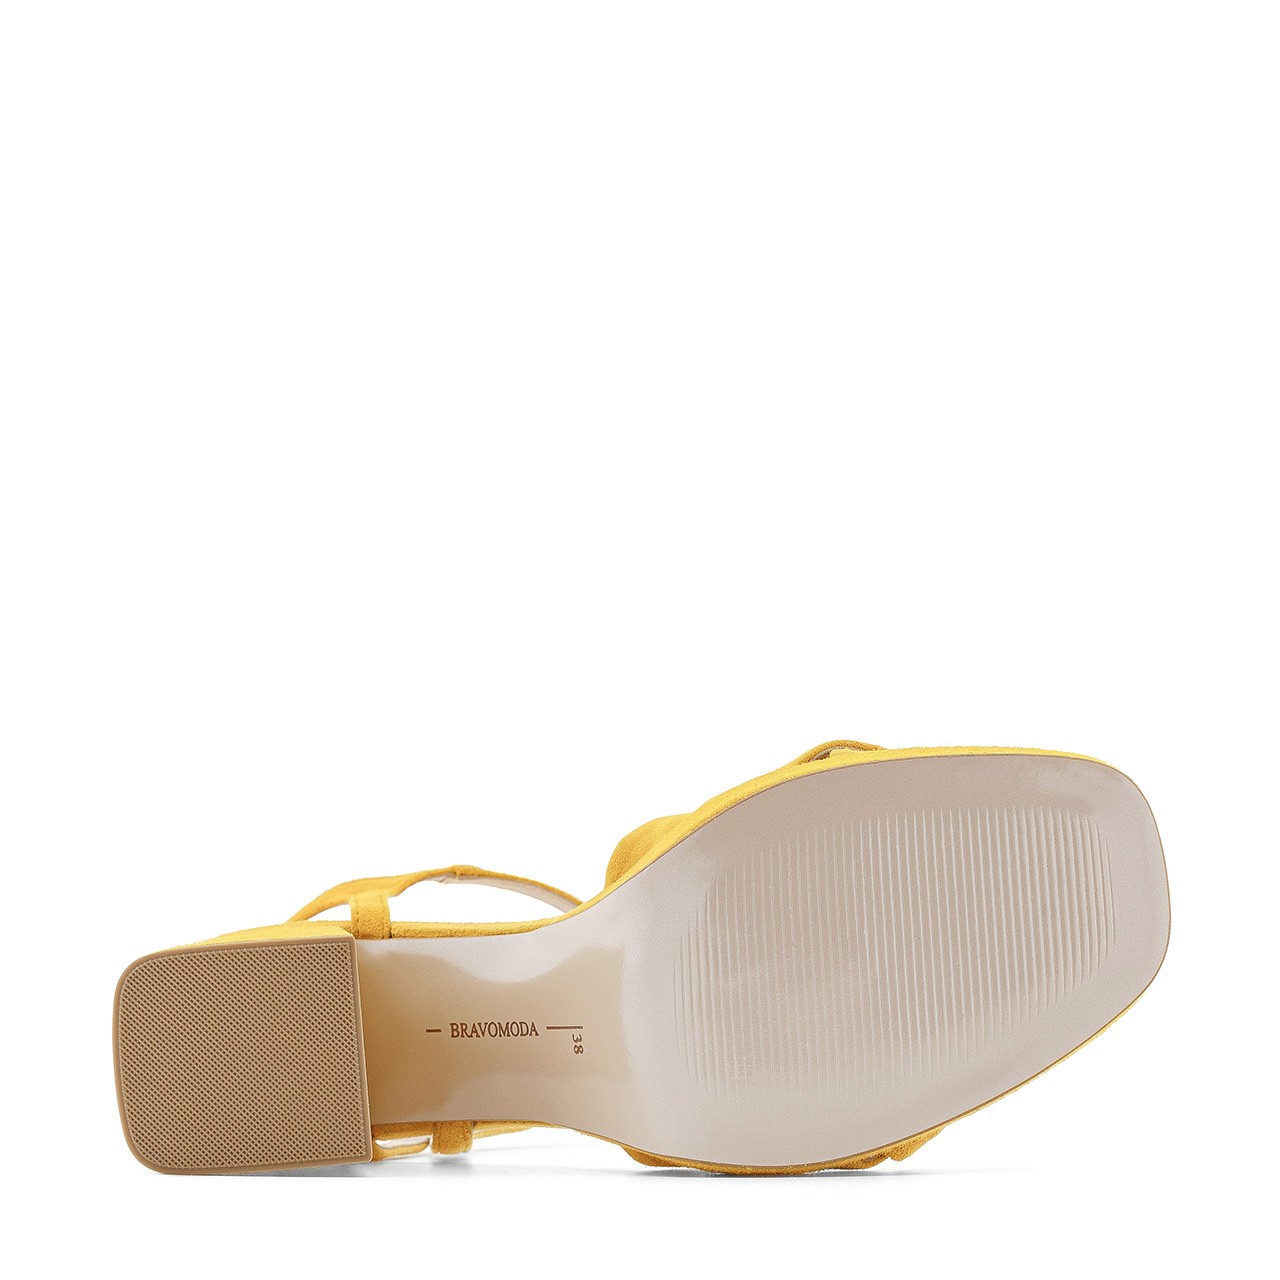 Sandałki damskie wykonane z naturalnej skóry zamszowej w kolorze żółtym